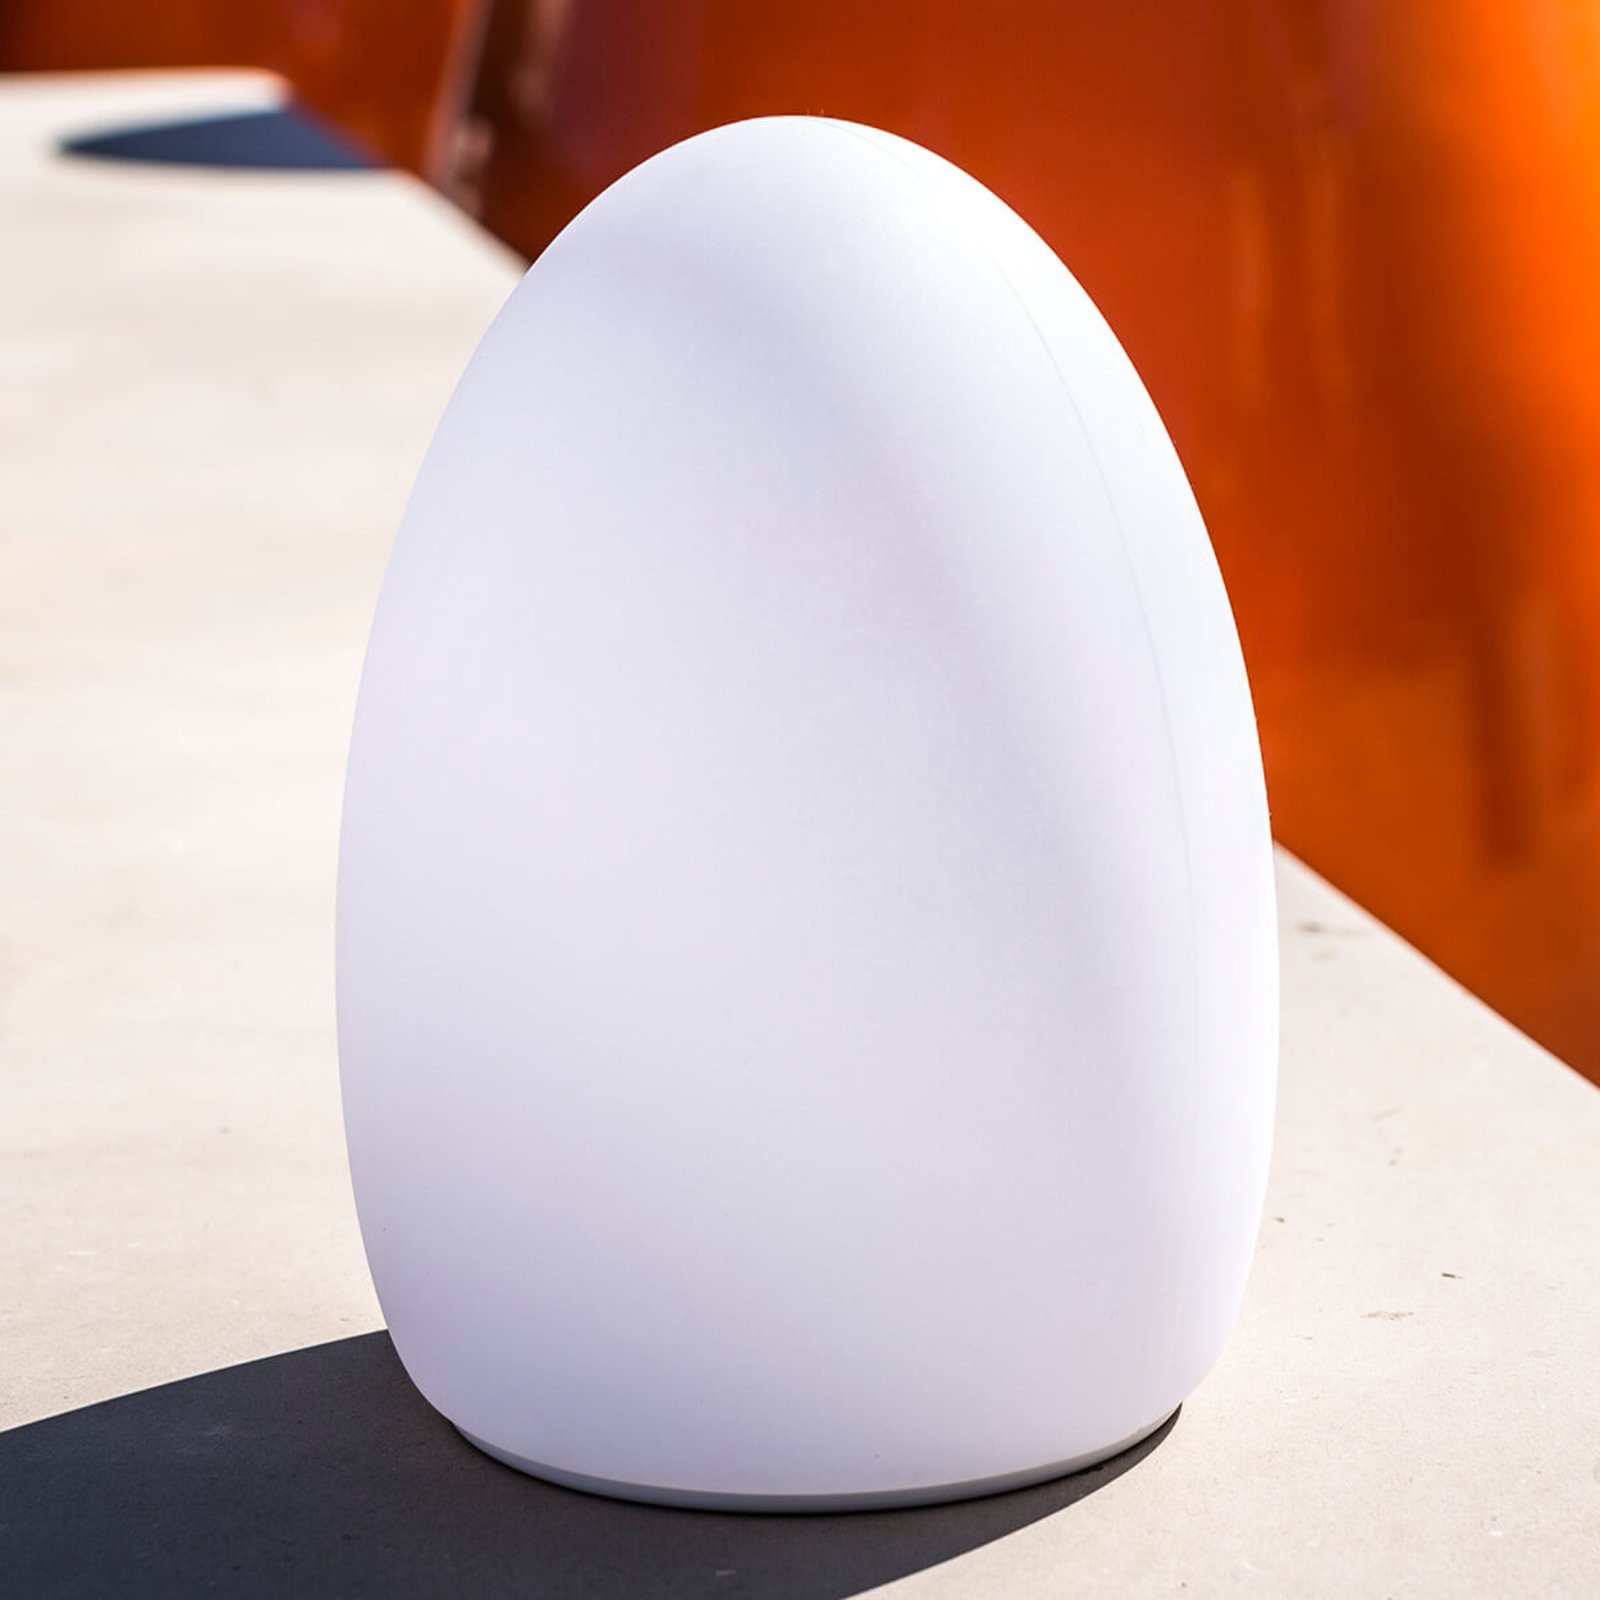 Egg - alkalmazással vezérelt dekoratív fény újratölthető akkumulátorral